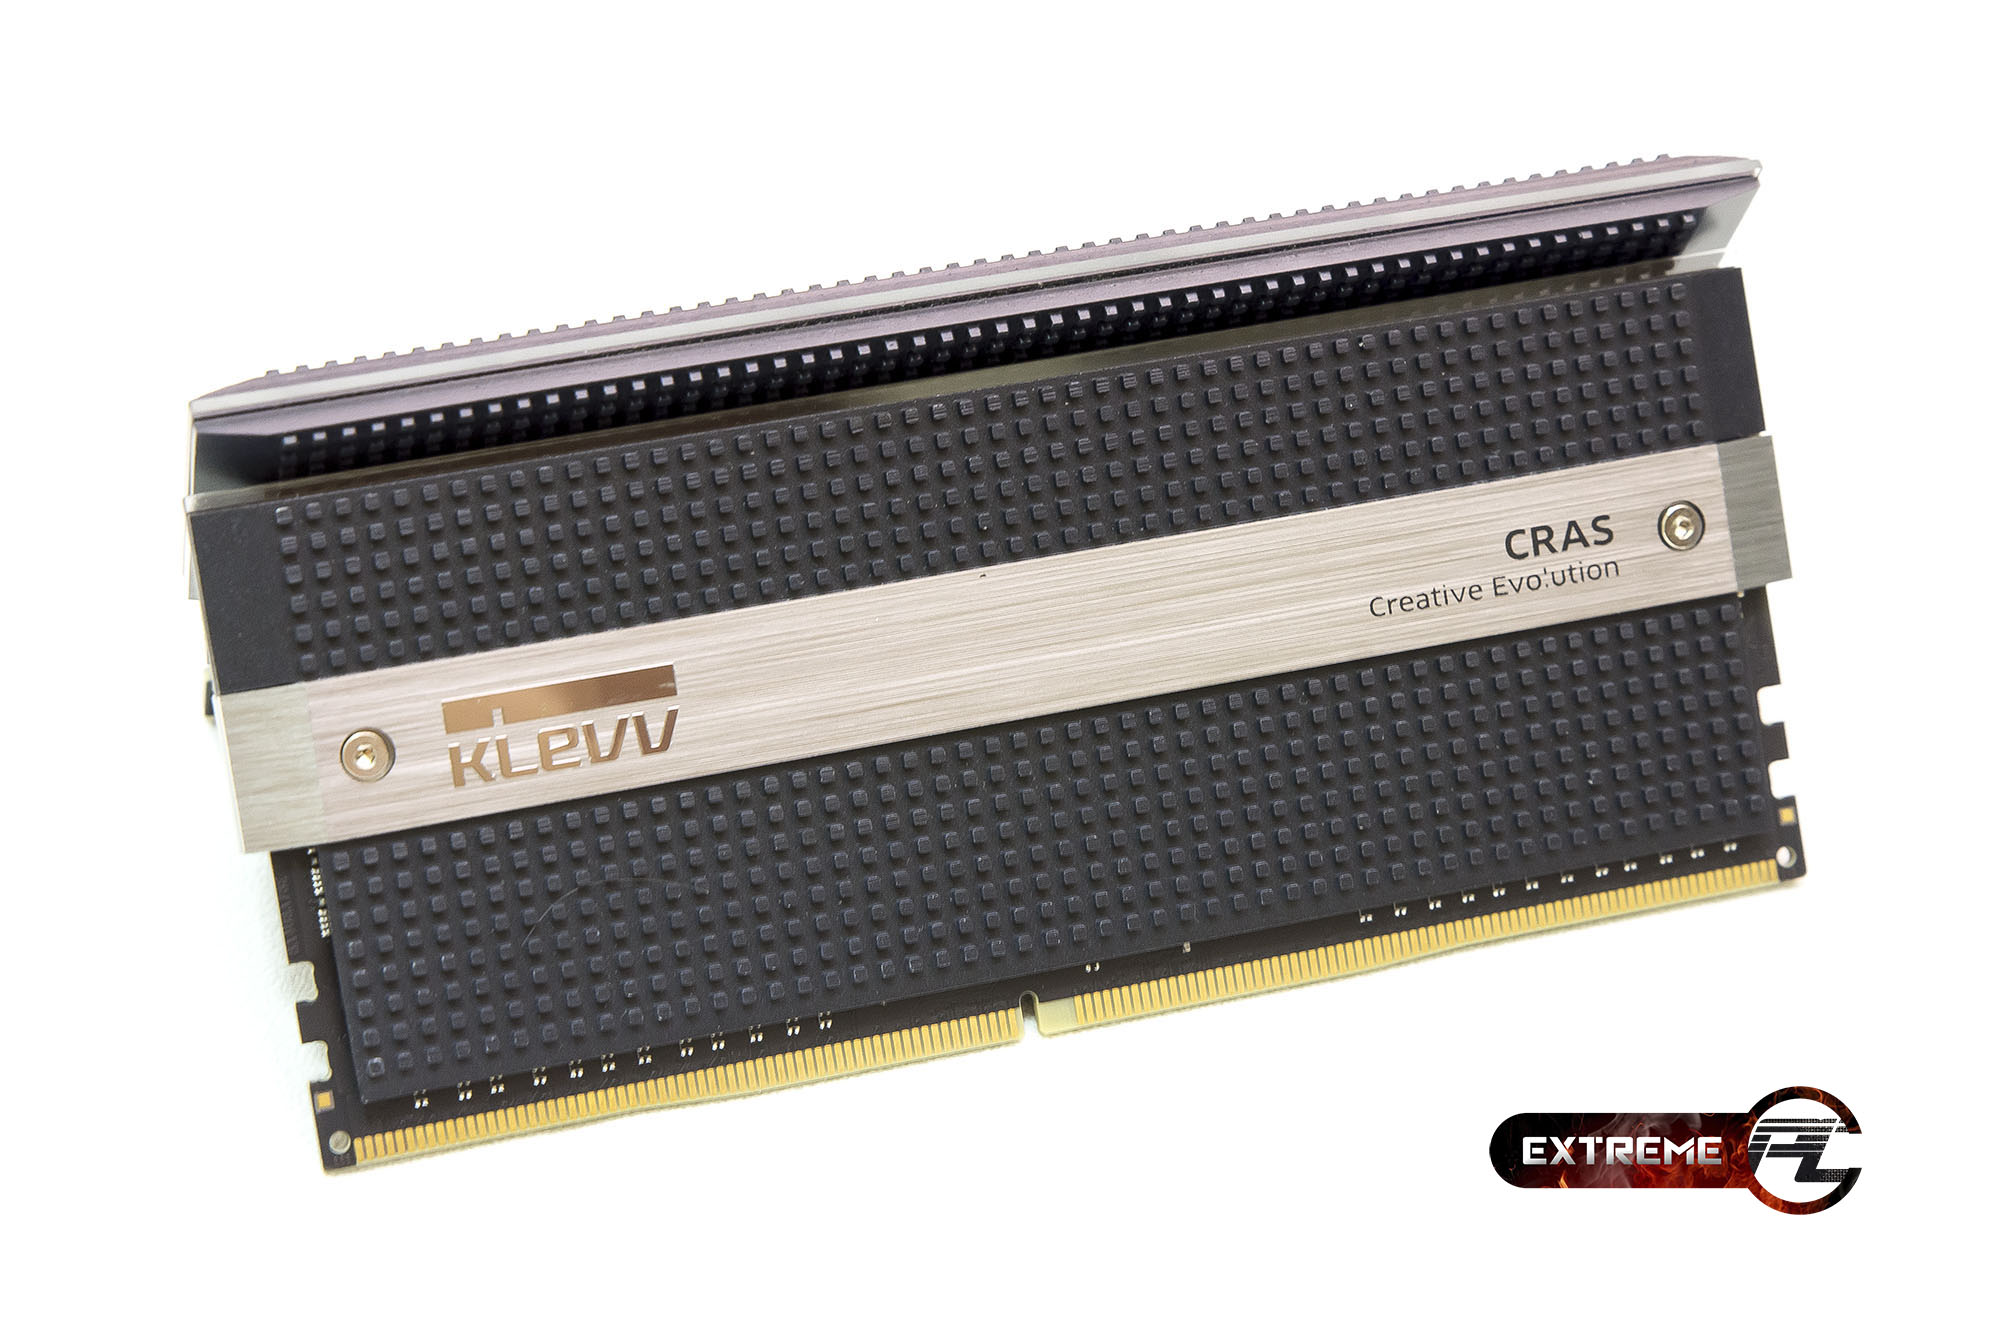 Review: KLEVV CRAS DDR4-3000 C16-18-18-36 4GBX4 1.35V หรูหราอย่างมีระดับ